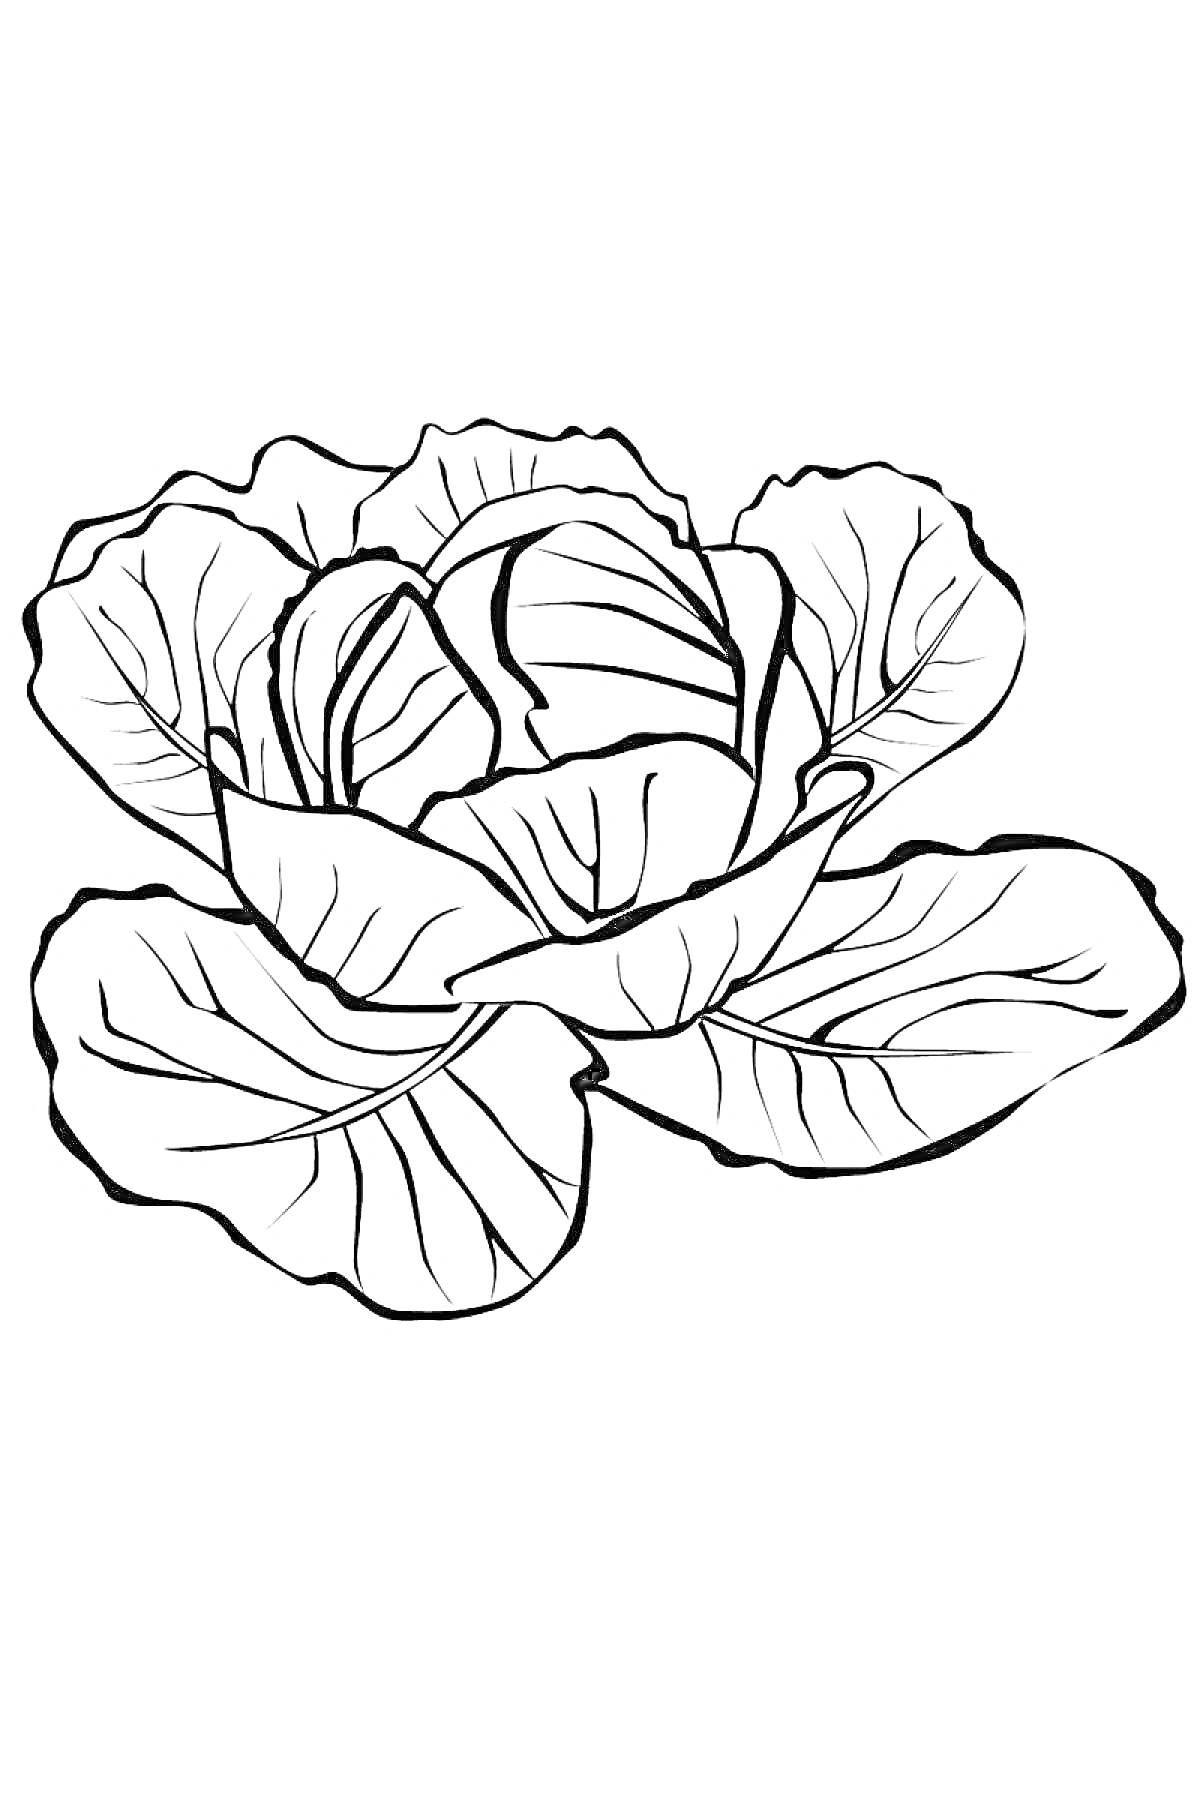 Раскраска Капуста с развернутыми листьями